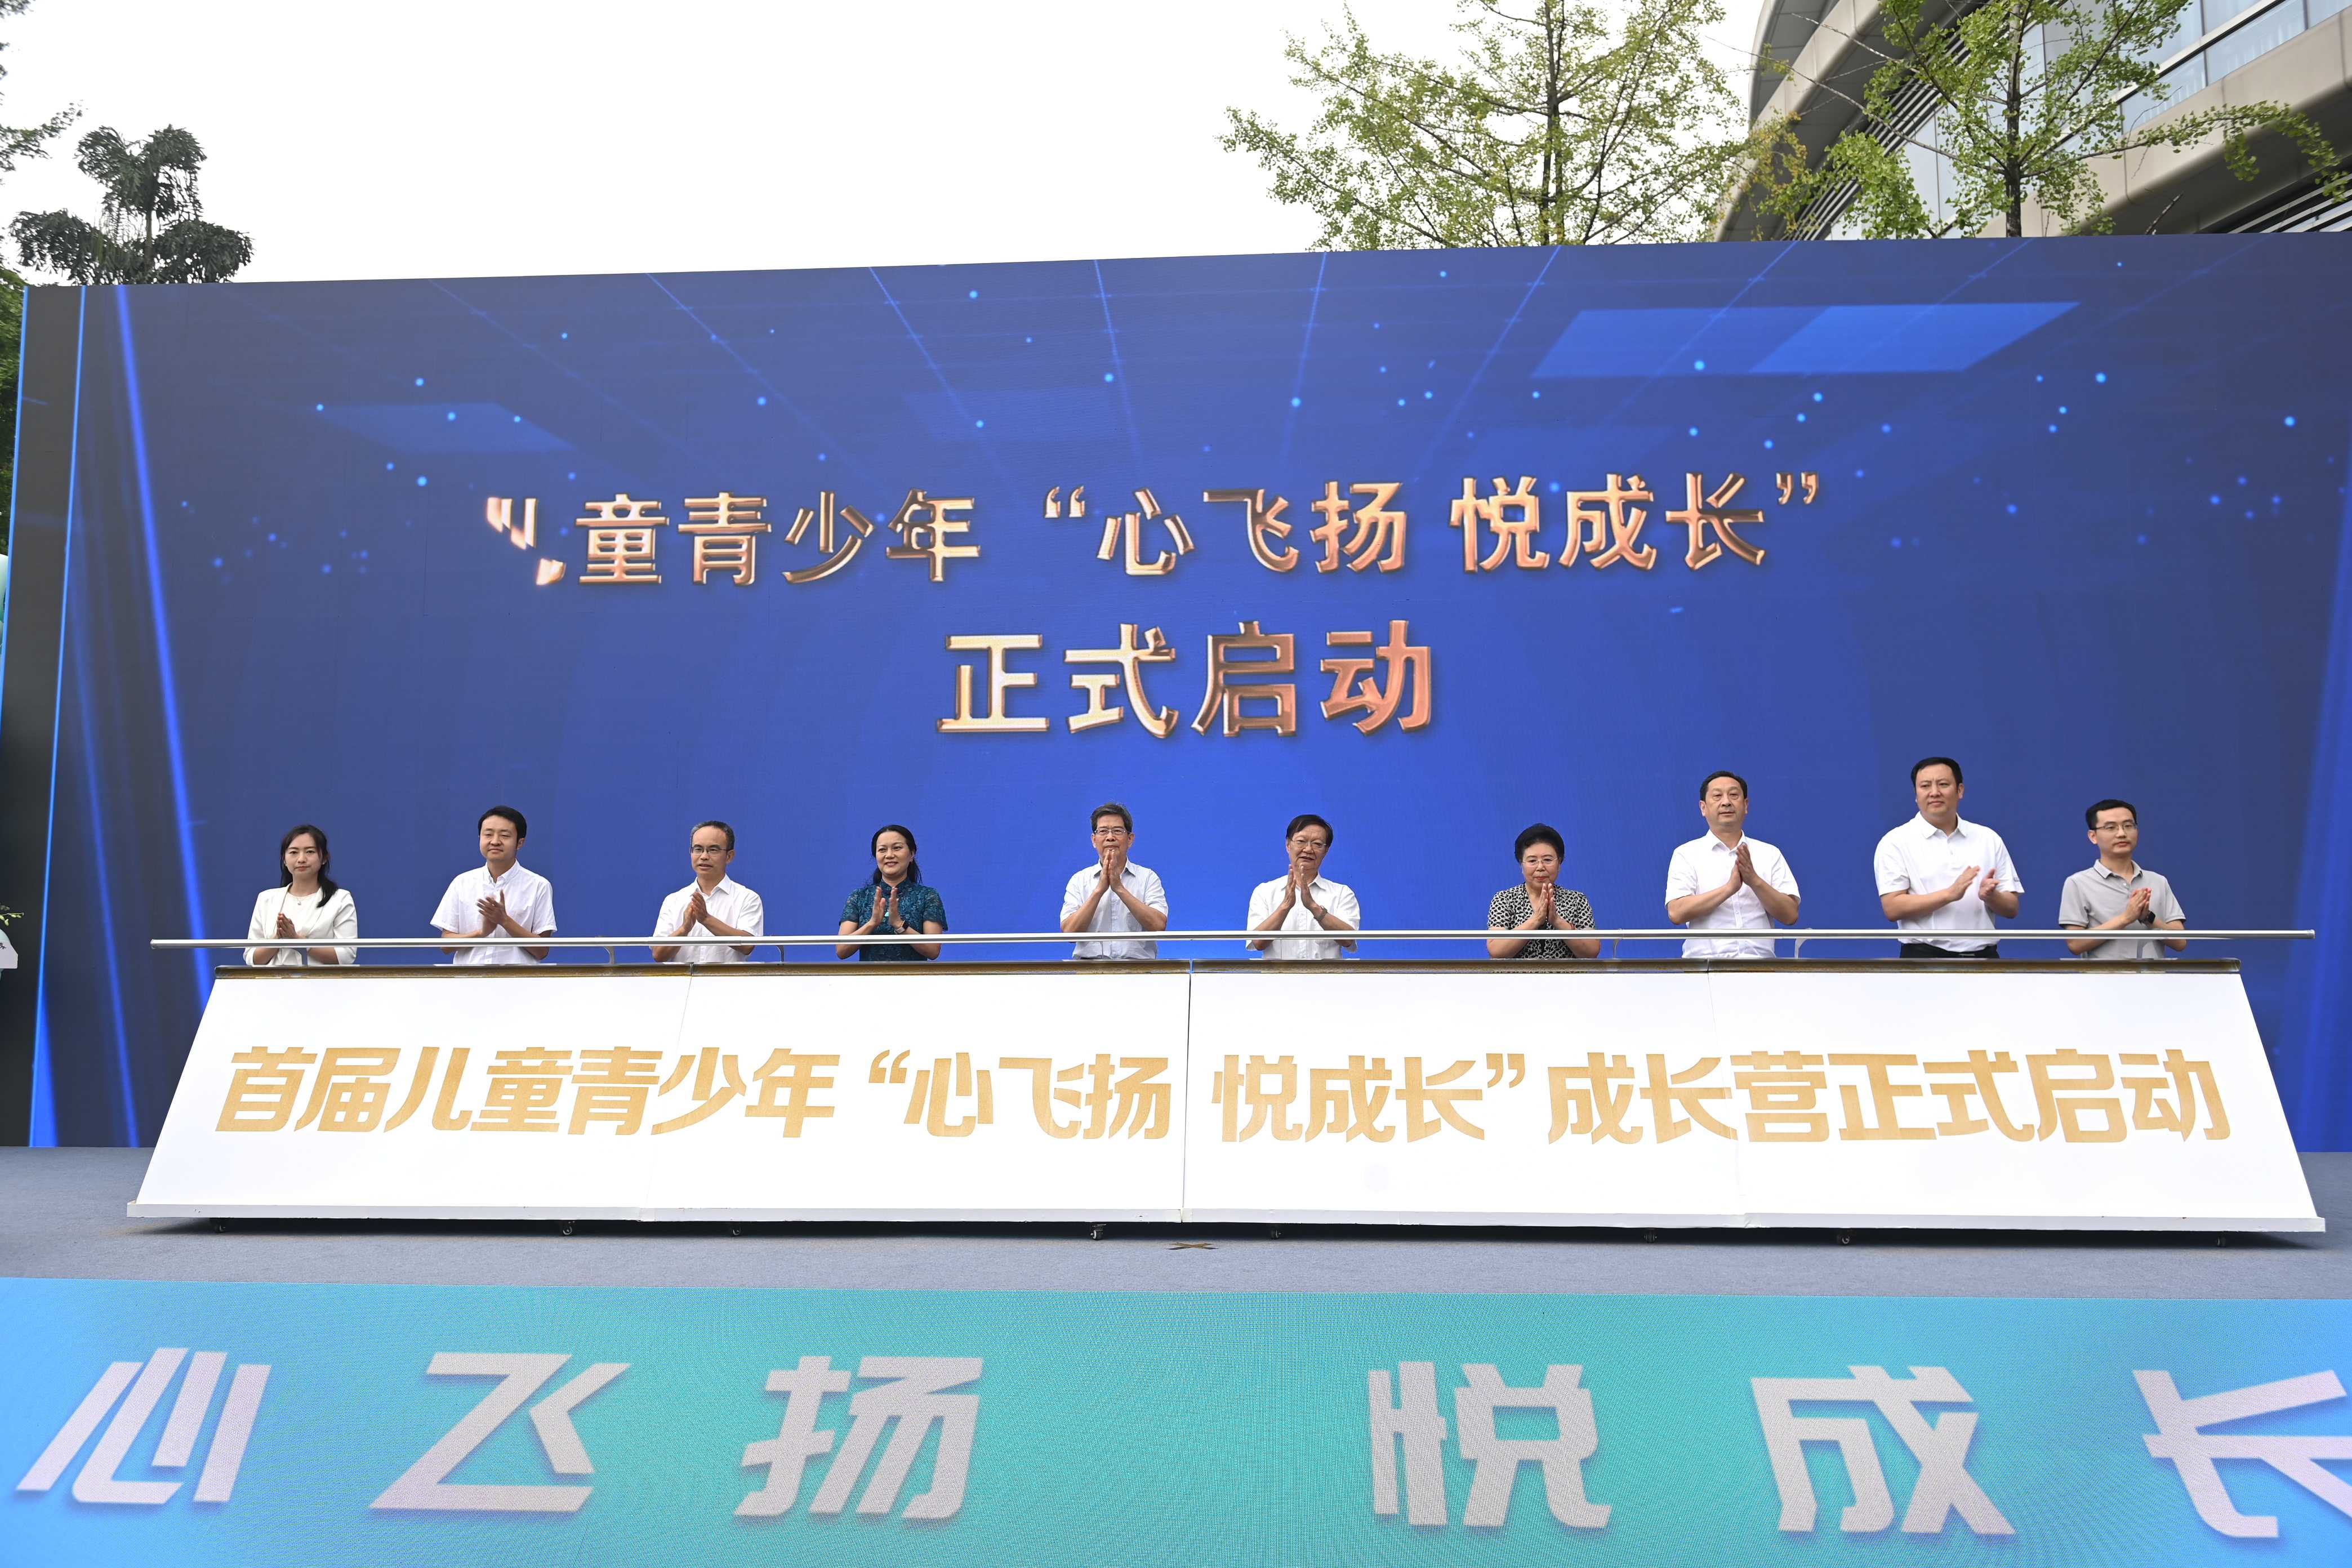 四川省儿童青少年心理健康关爱中心成立 张中伟为中心授牌